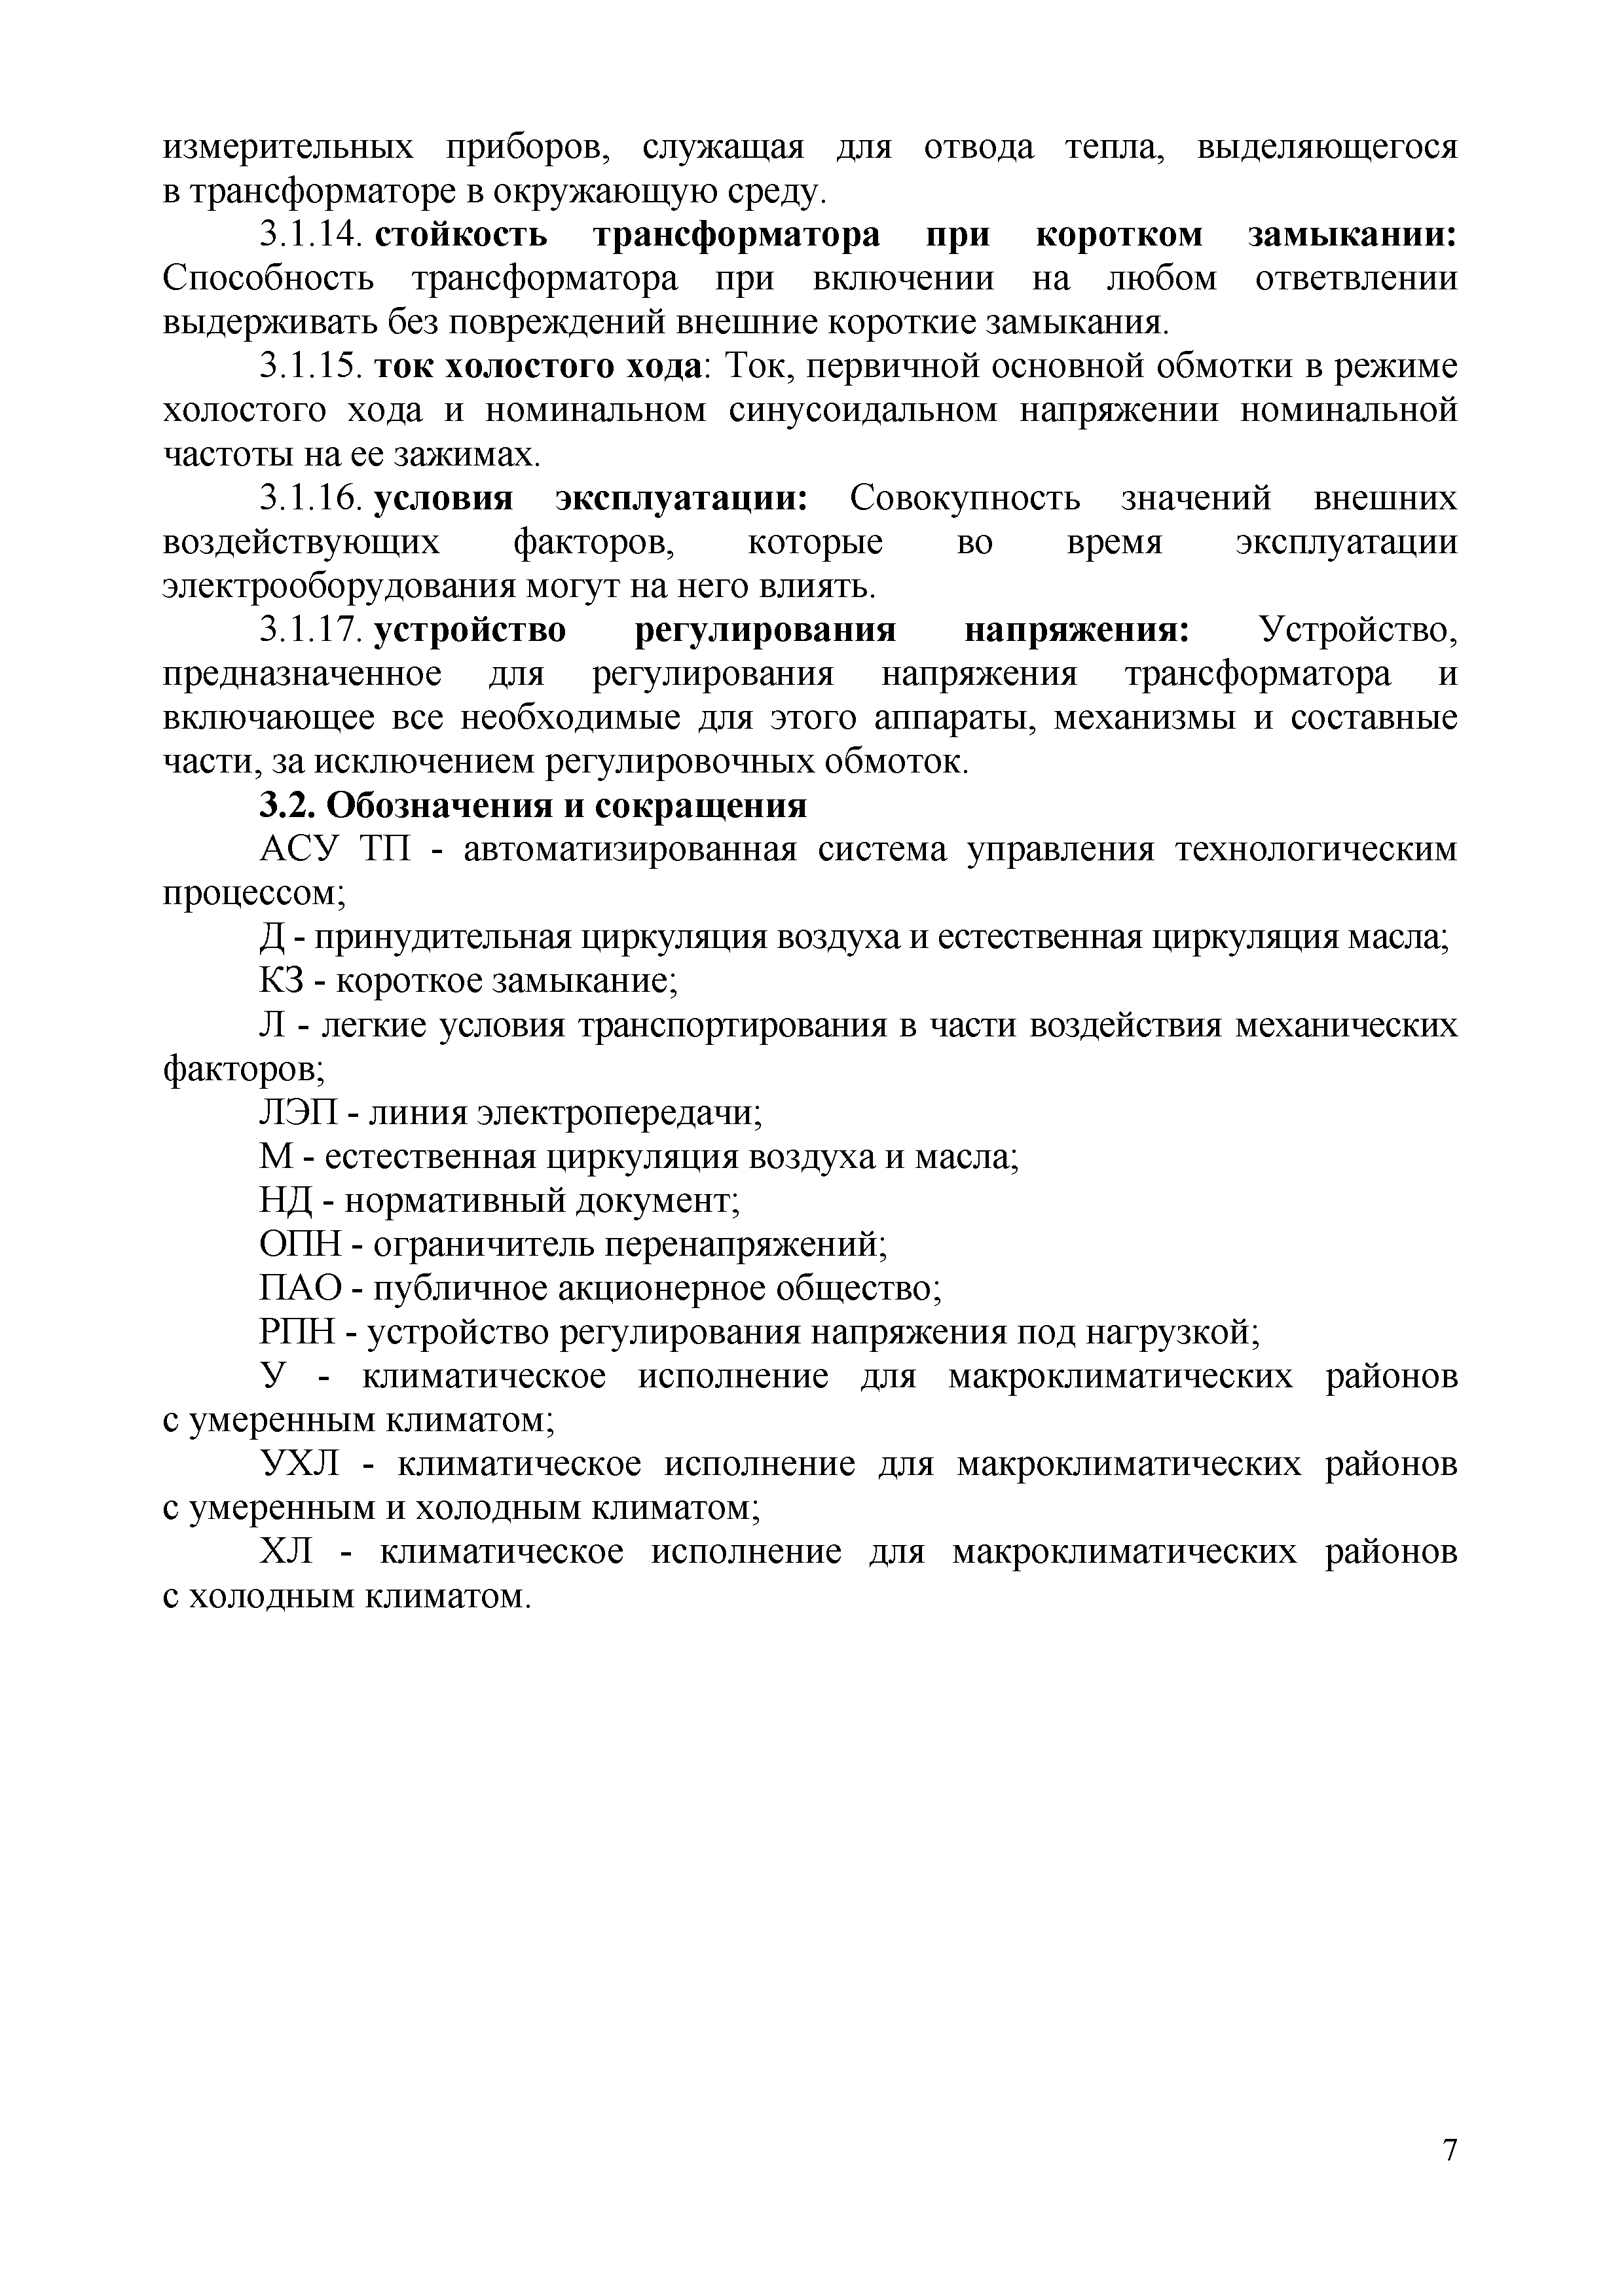 СТО 34.01-3.2-013-2017